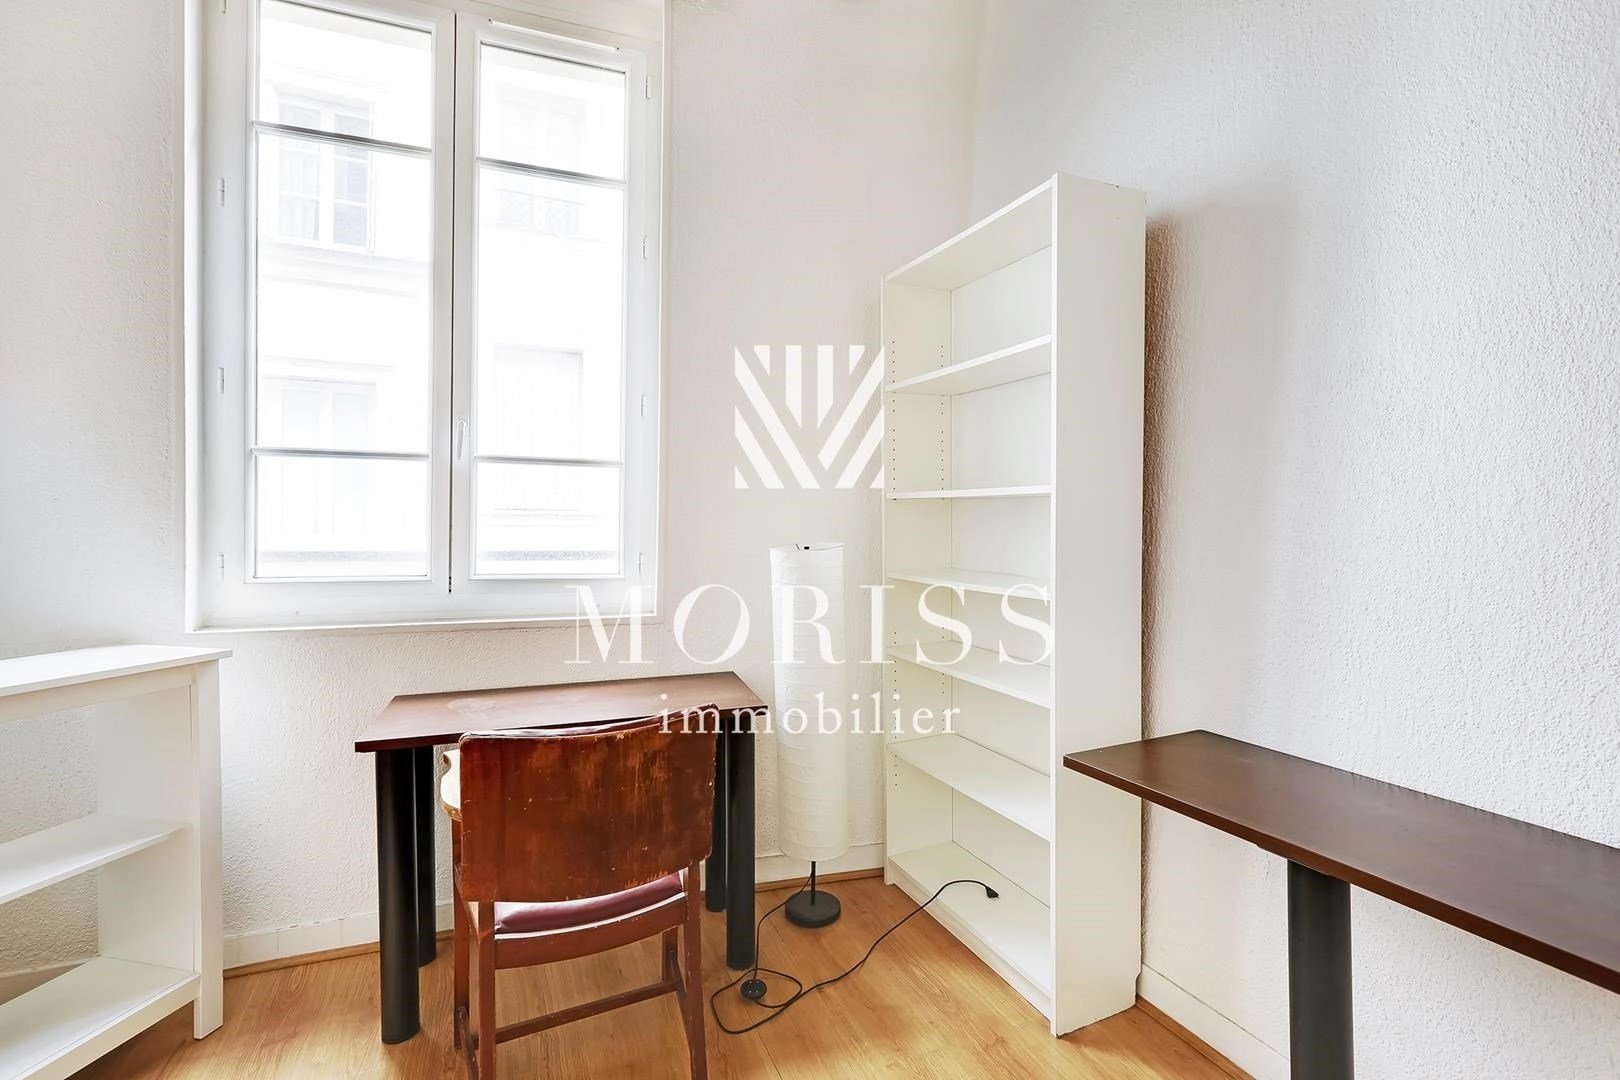 Appartement - Studio - Quartier Arts et Métiers - 75003 Paris - Image Array